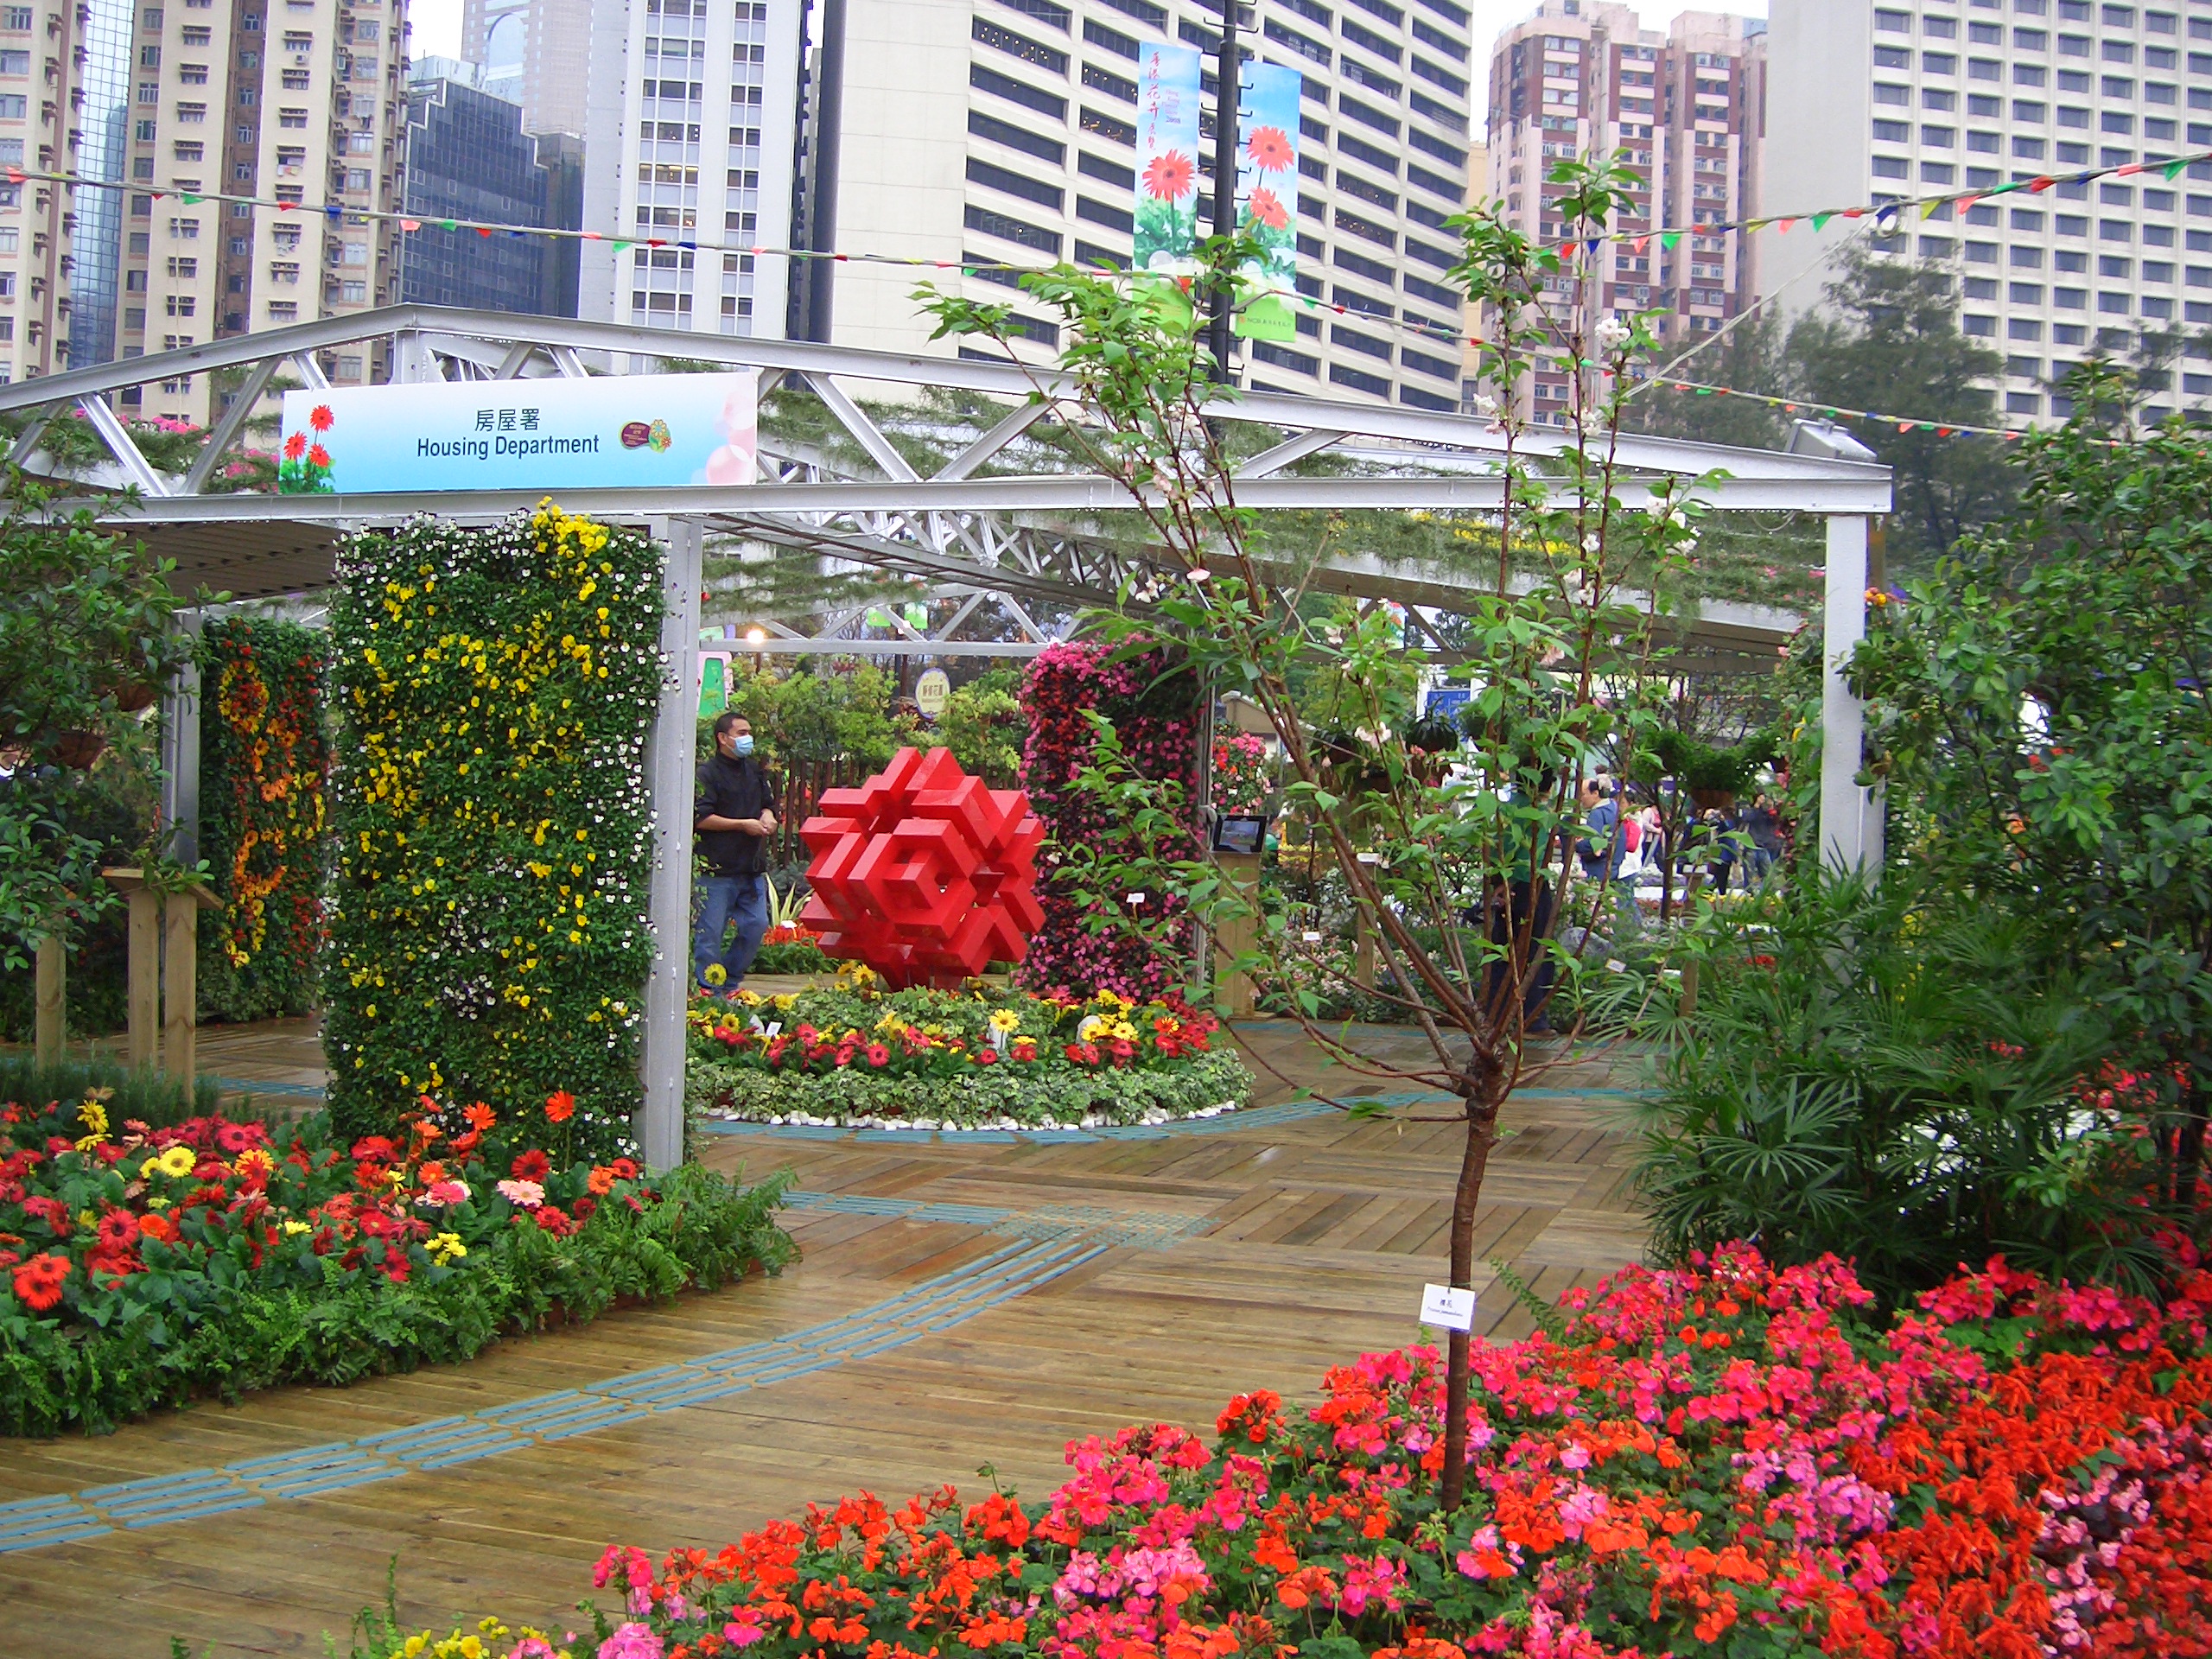 房委會於二零零八年香港花卉展覽的展品 1